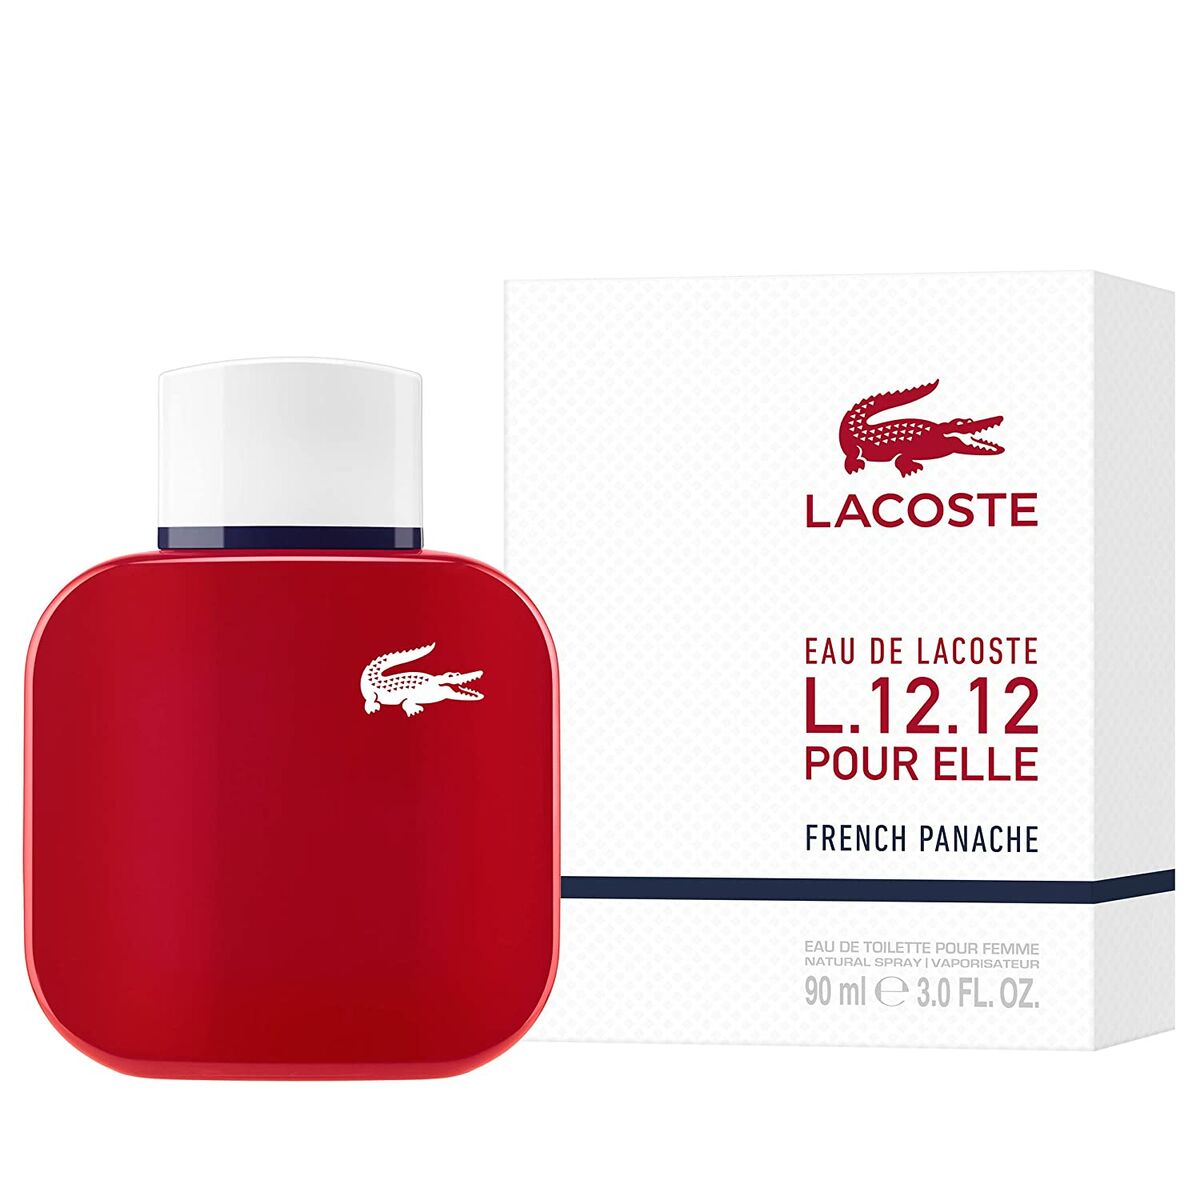 Women's Perfume Lacoste EDT Eau de Lacoste L.12.12 French Panache 90 ml-0